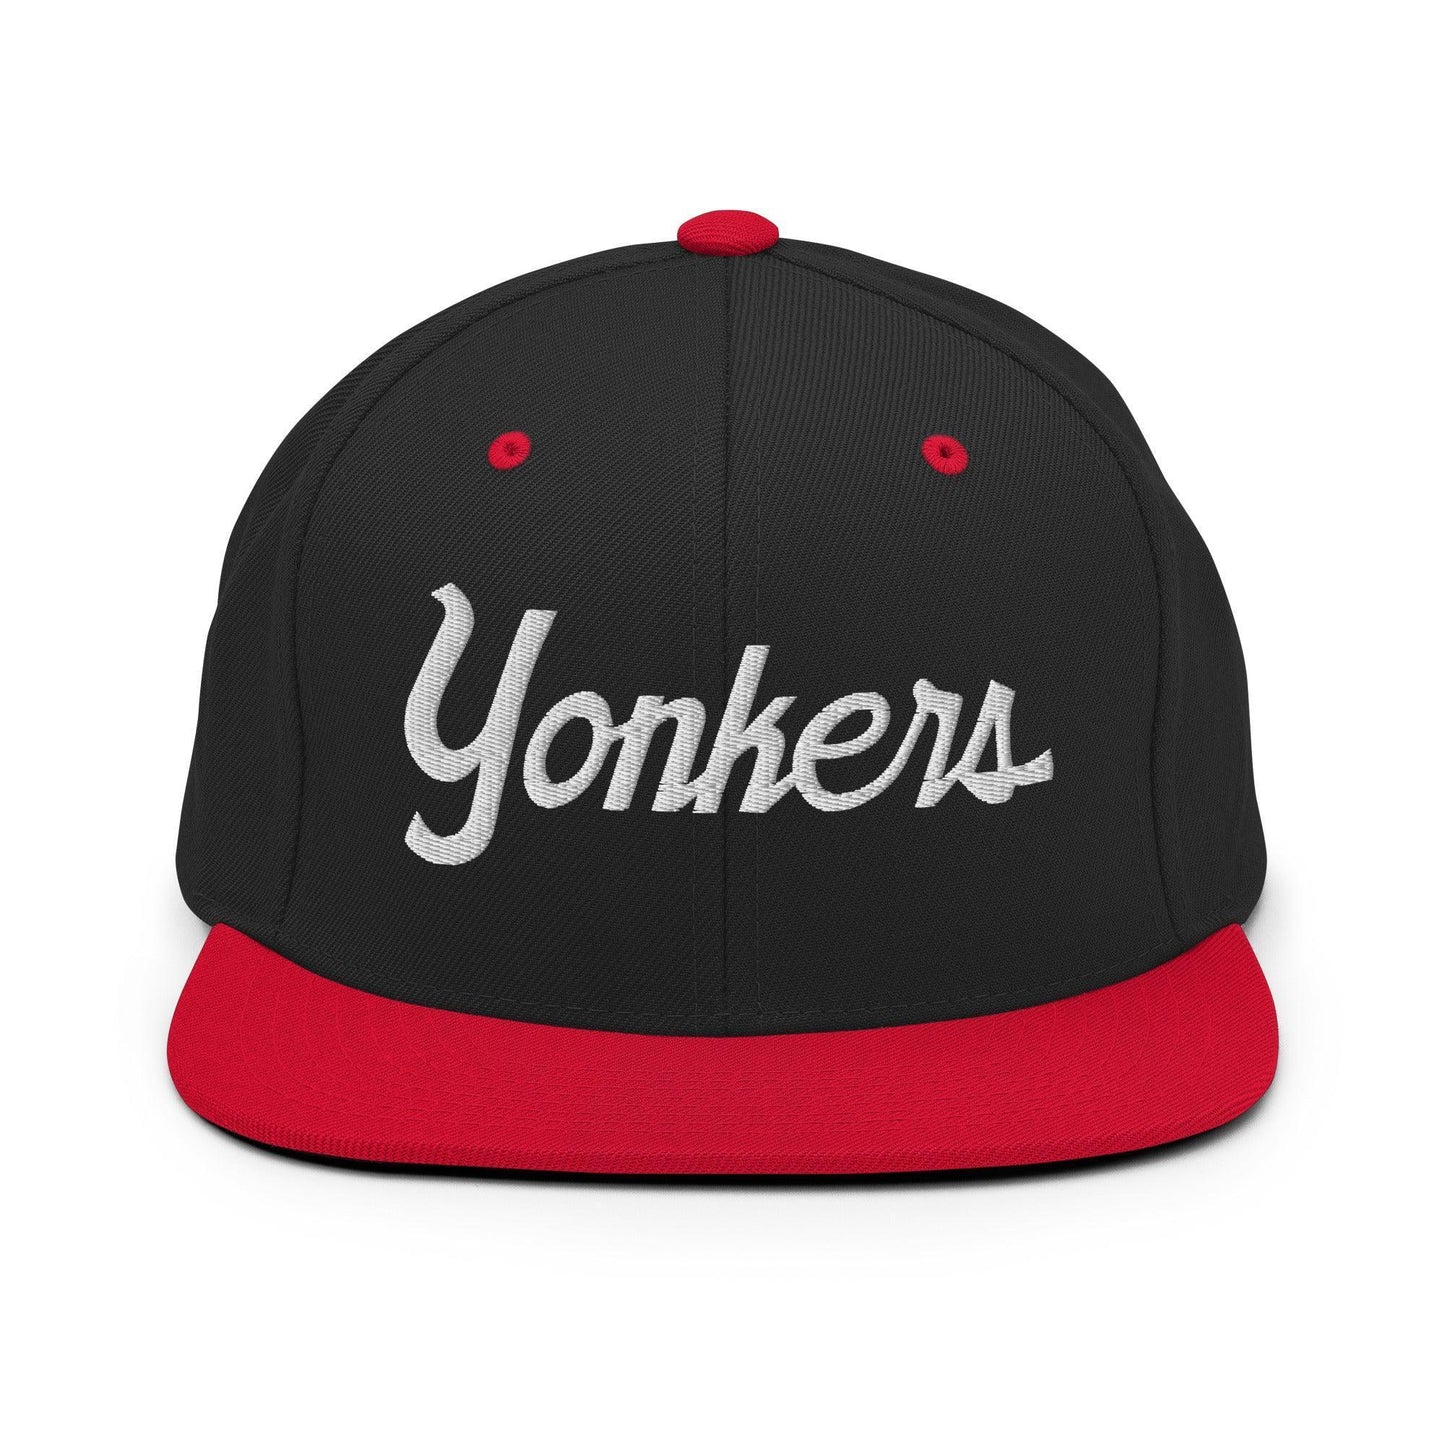 Yonkers Script Snapback Hat Black Red